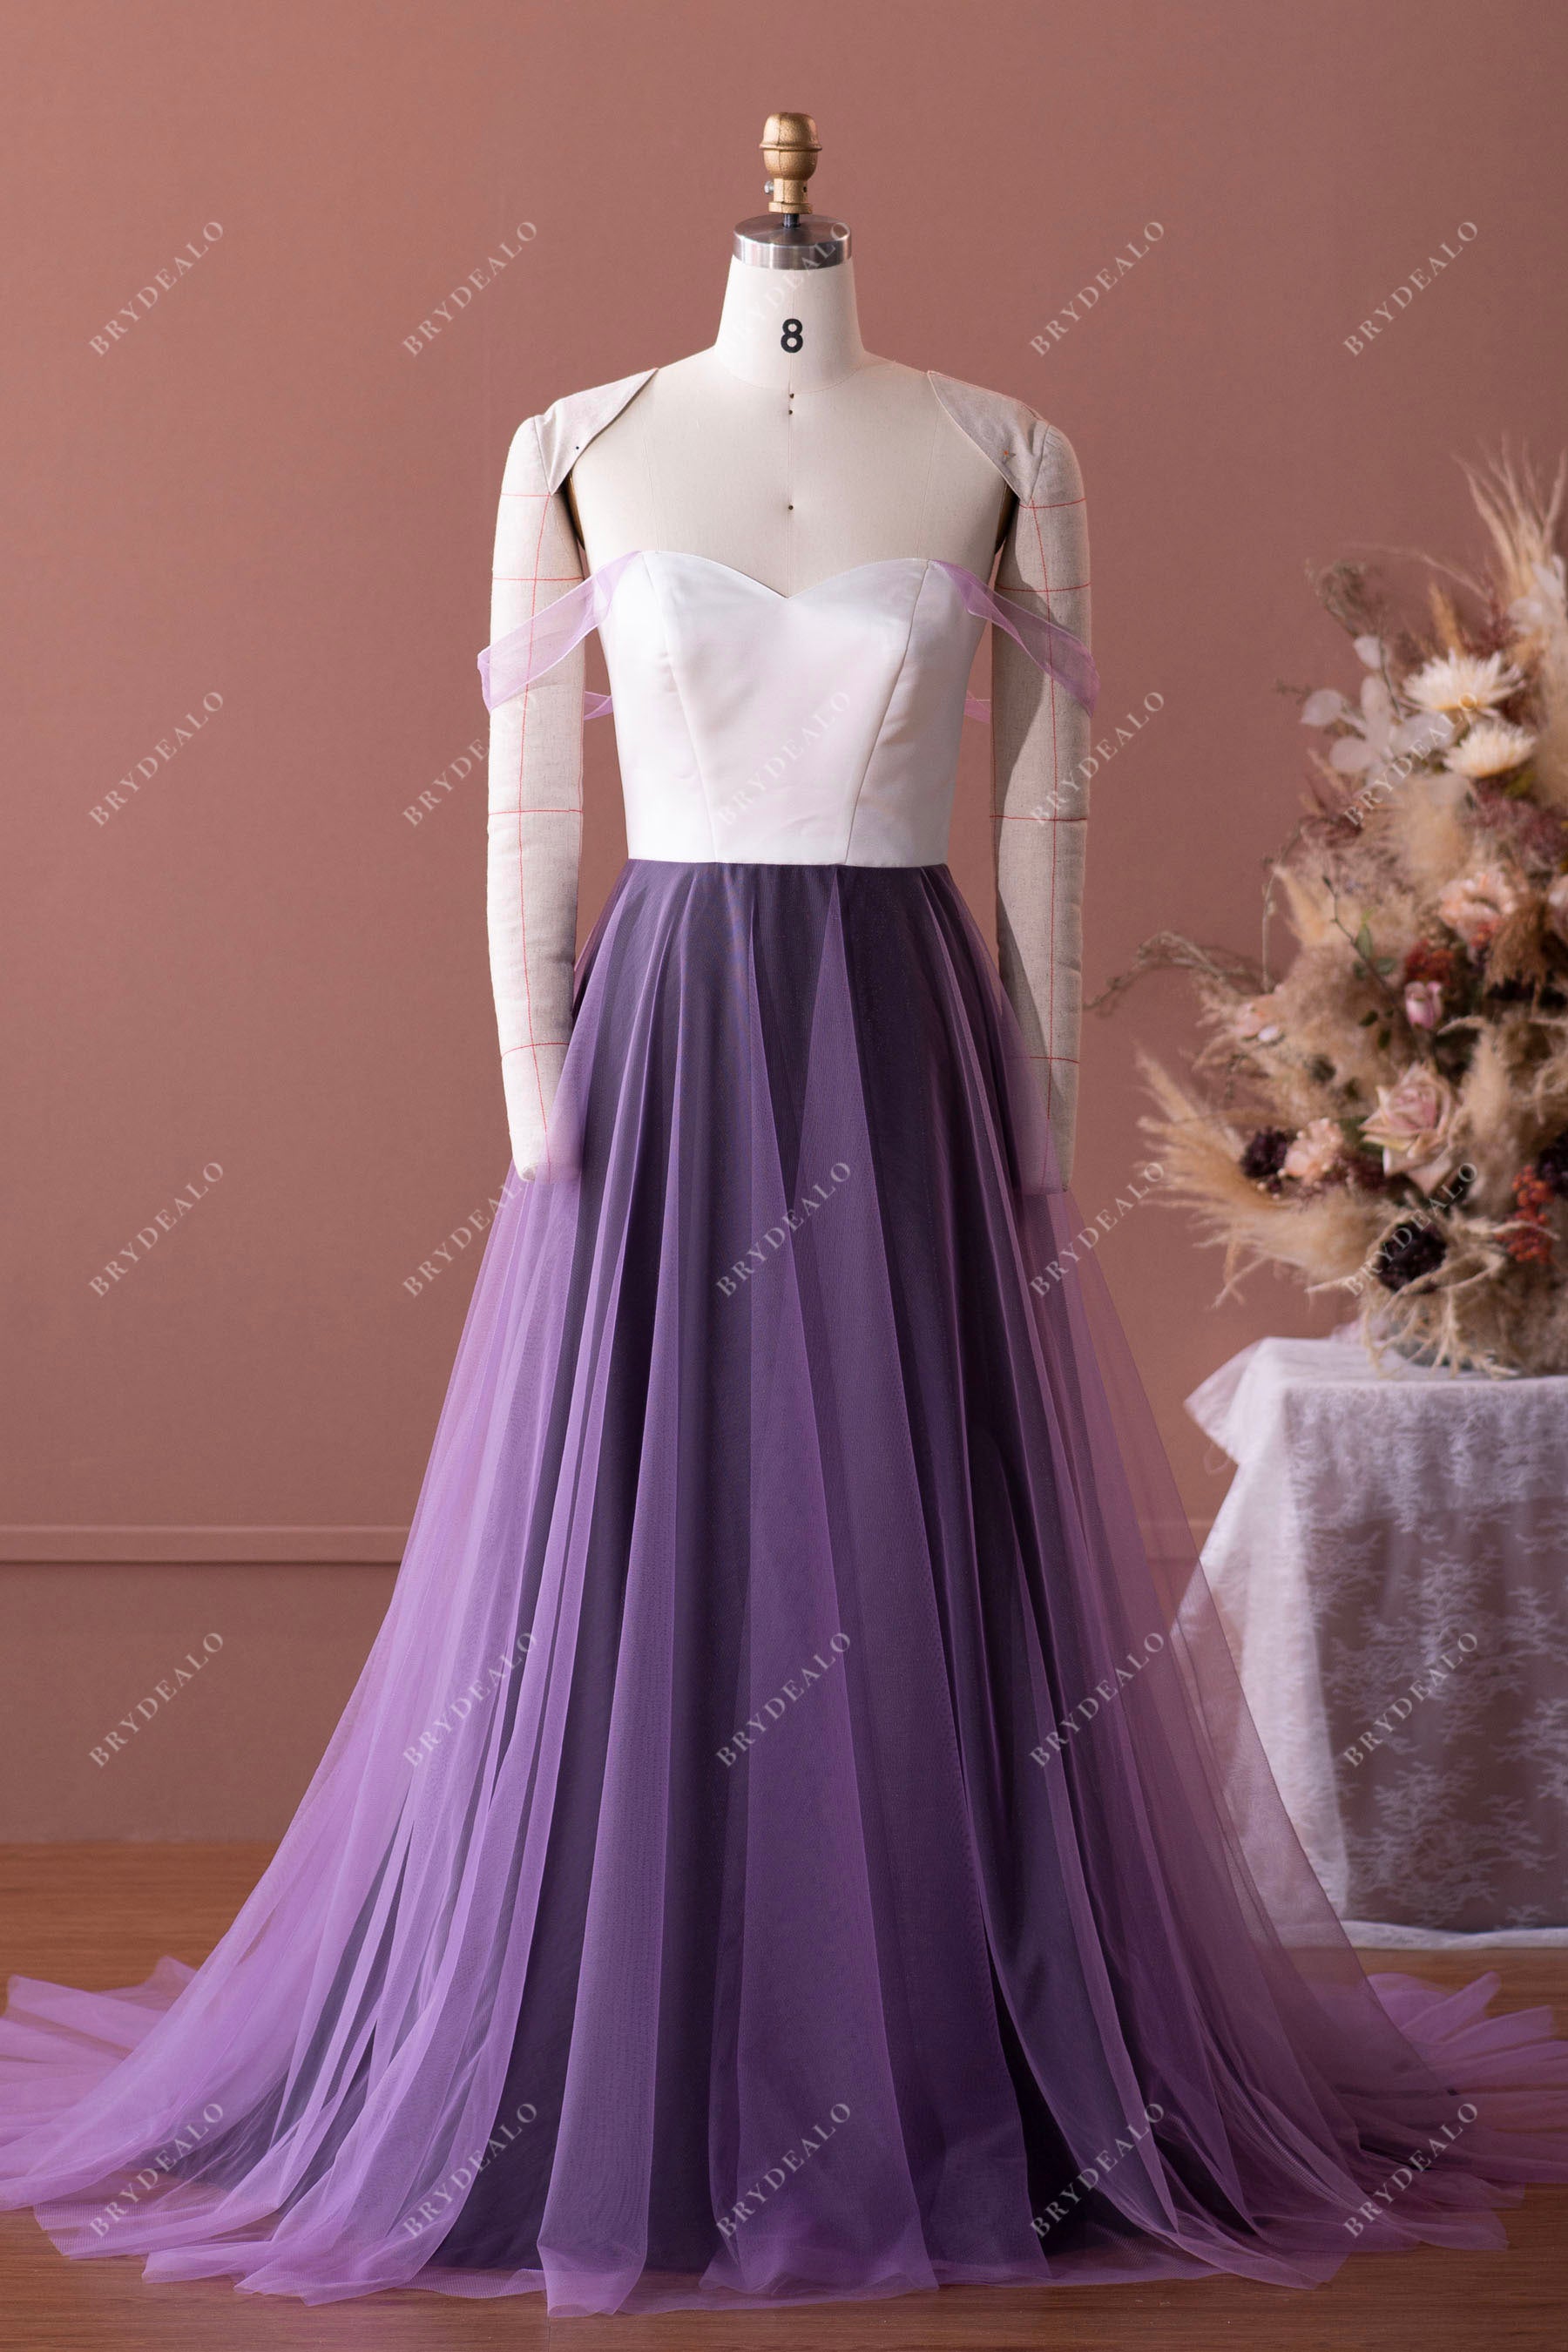 designer custom off-shoulder A-line wedding dress mockup